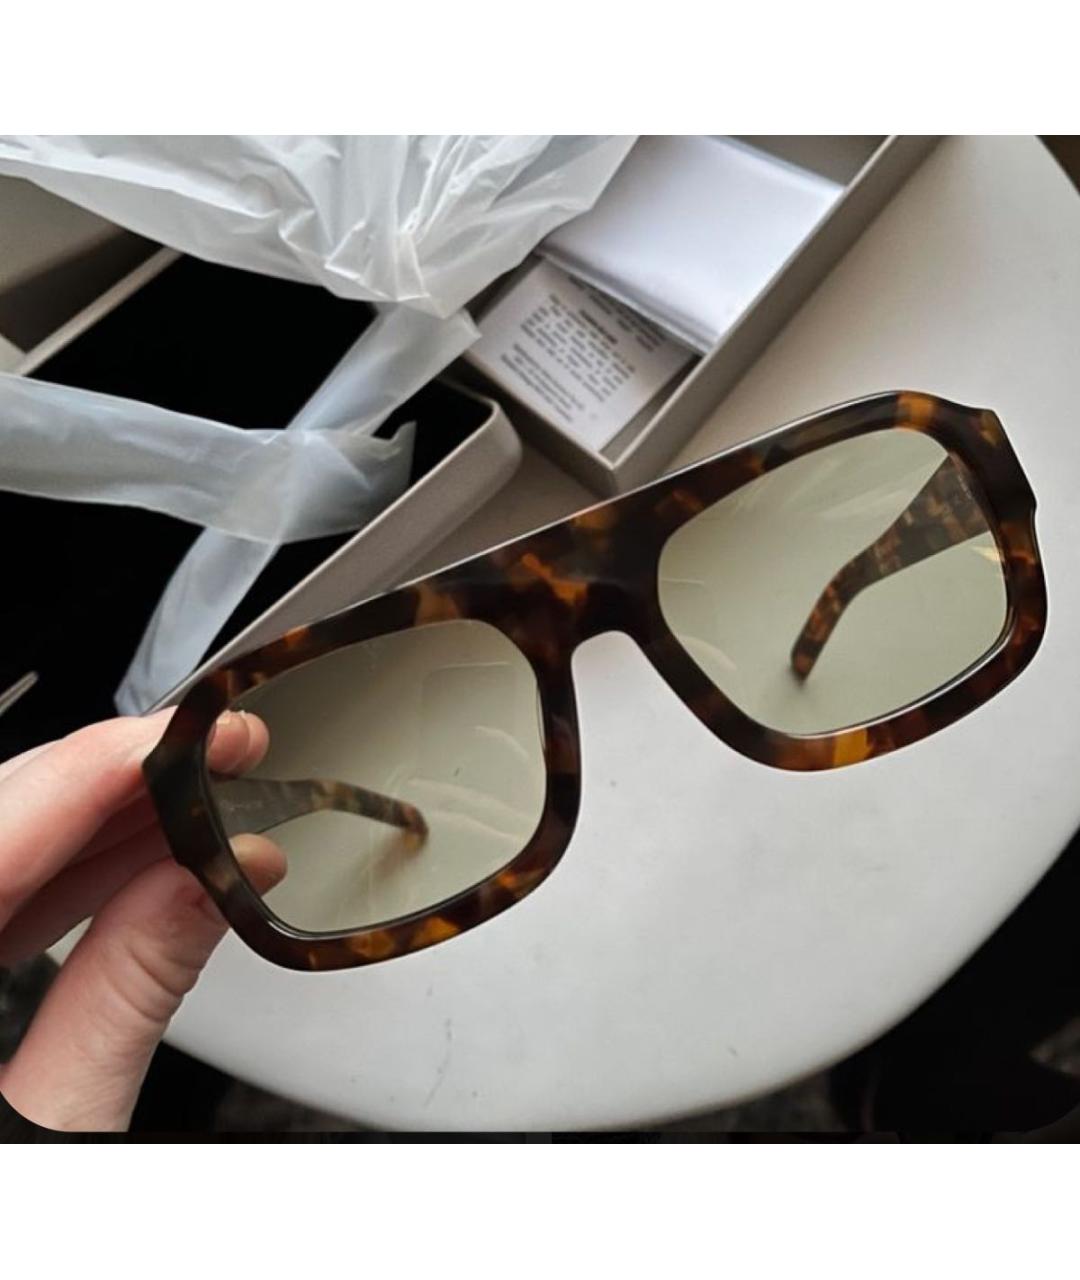 Vehla Коричневые пластиковые солнцезащитные очки, фото 3